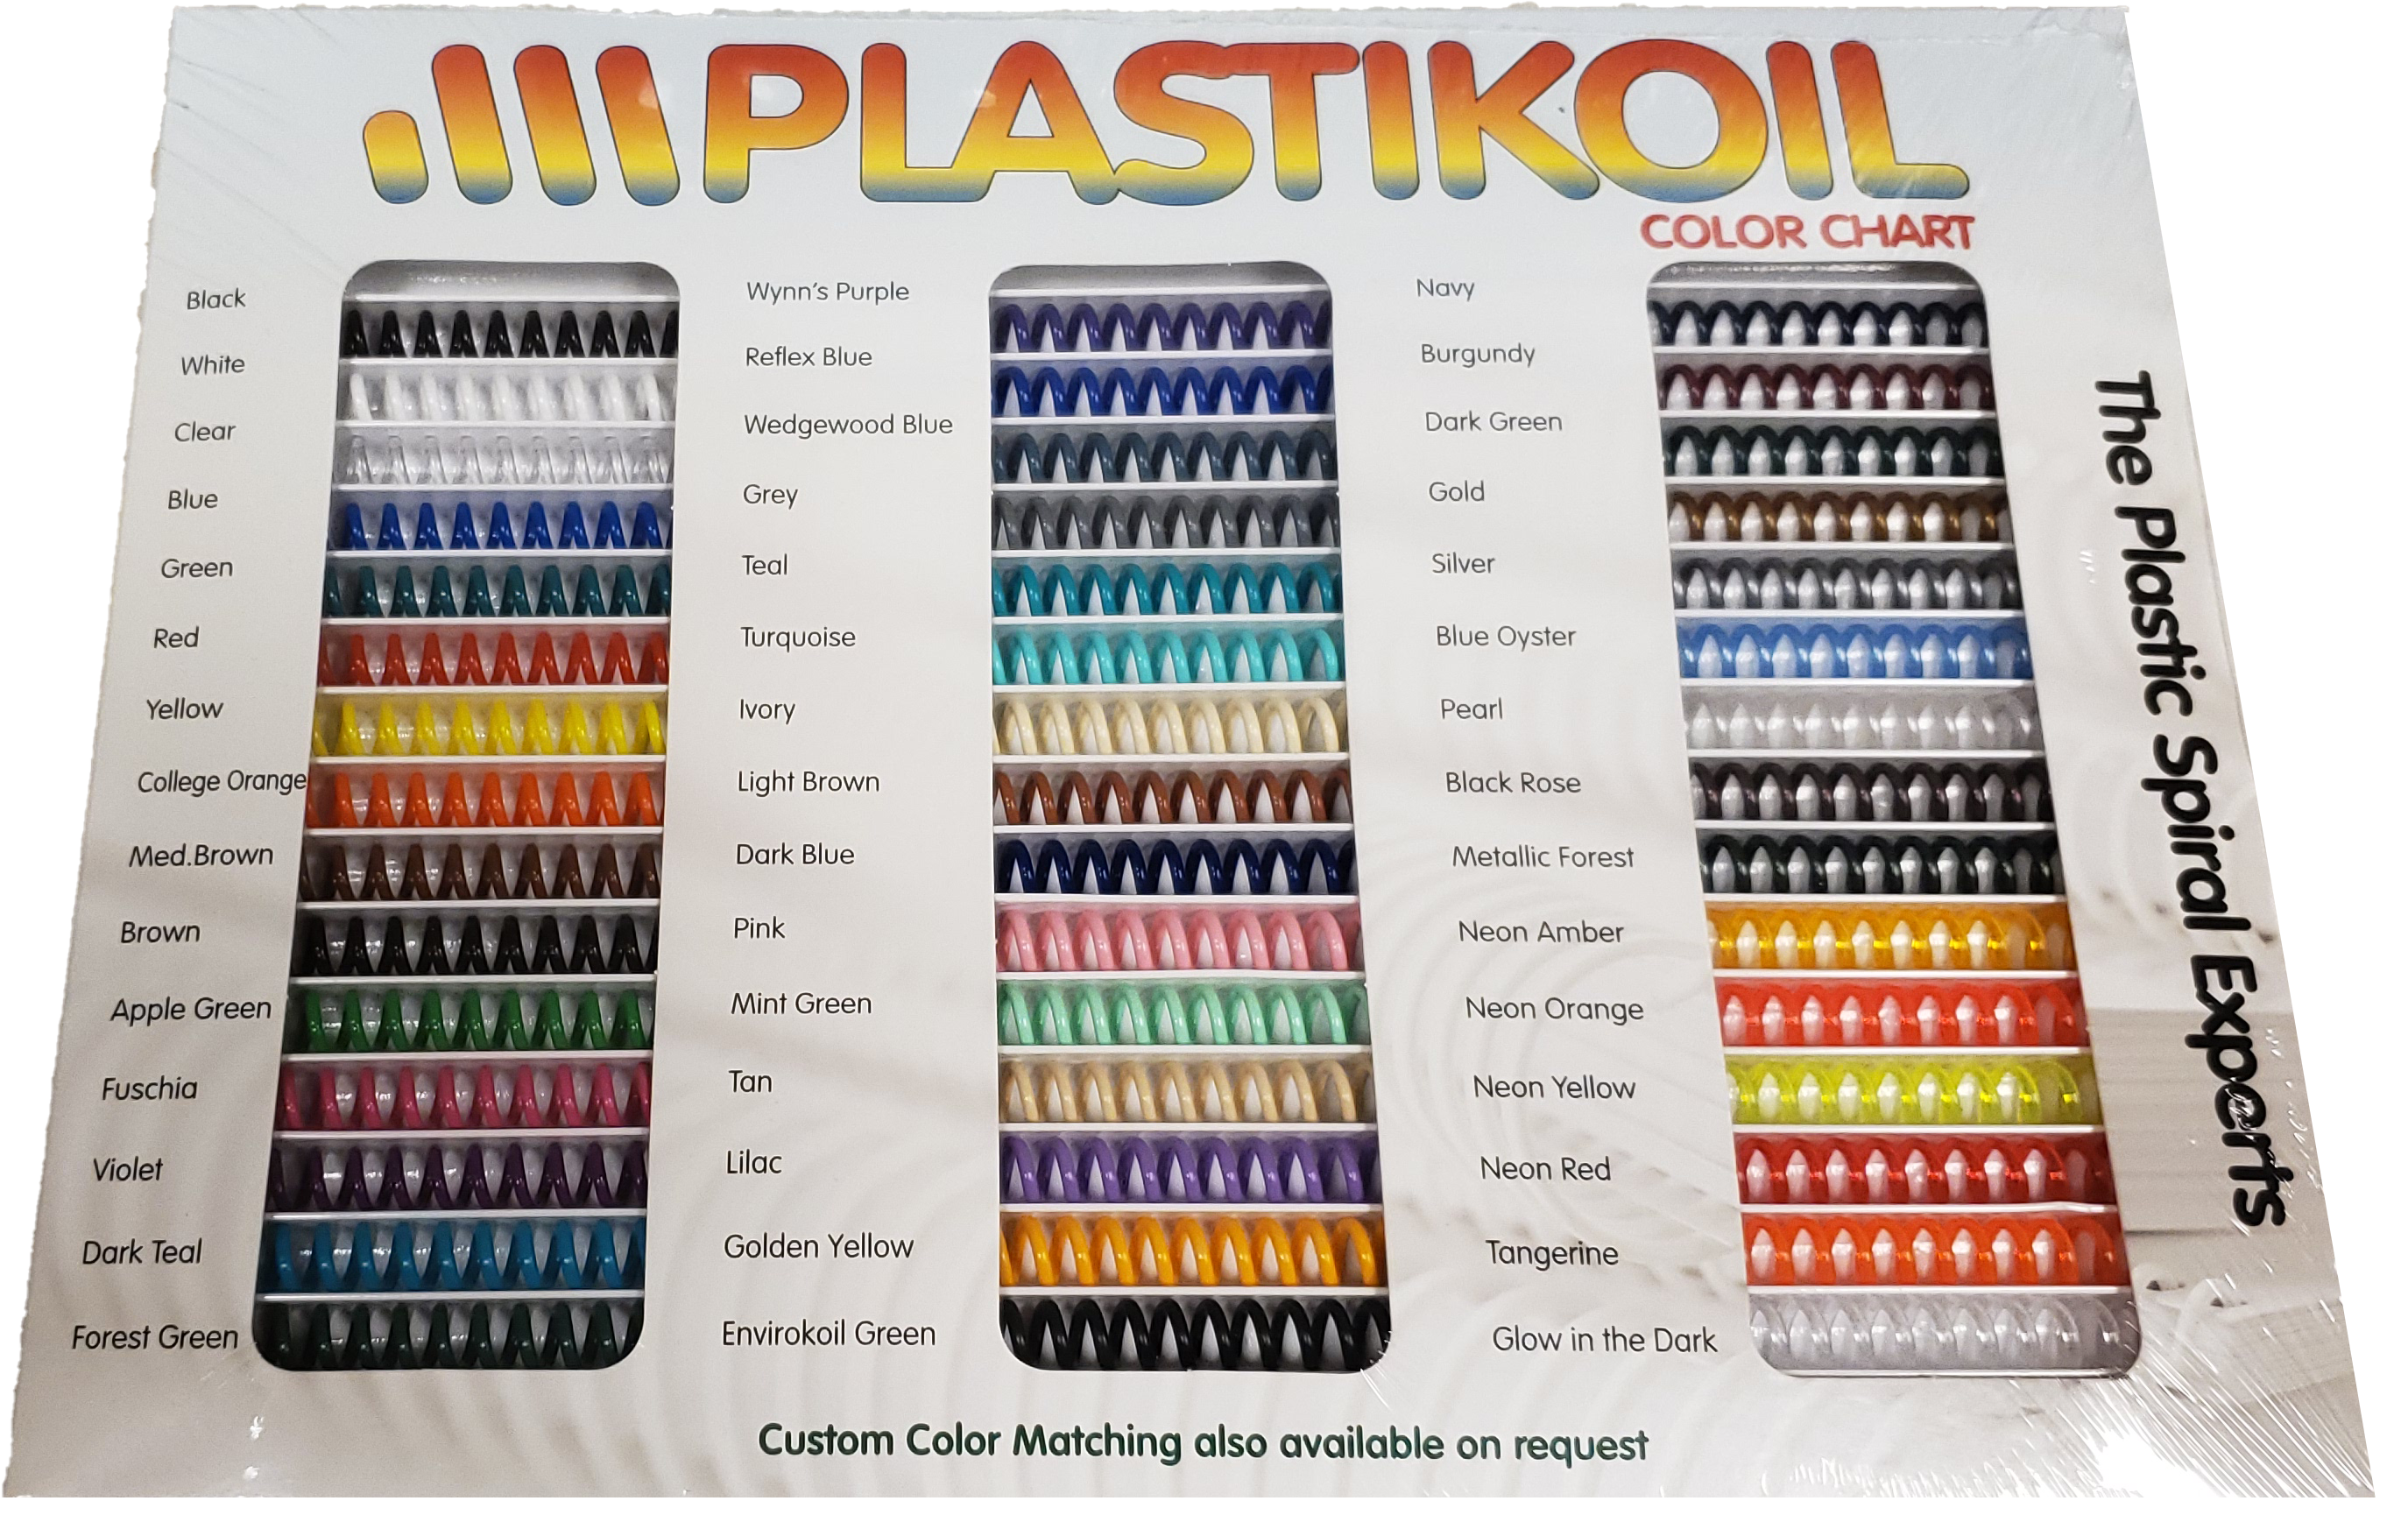 45 Color Plastikoil chart